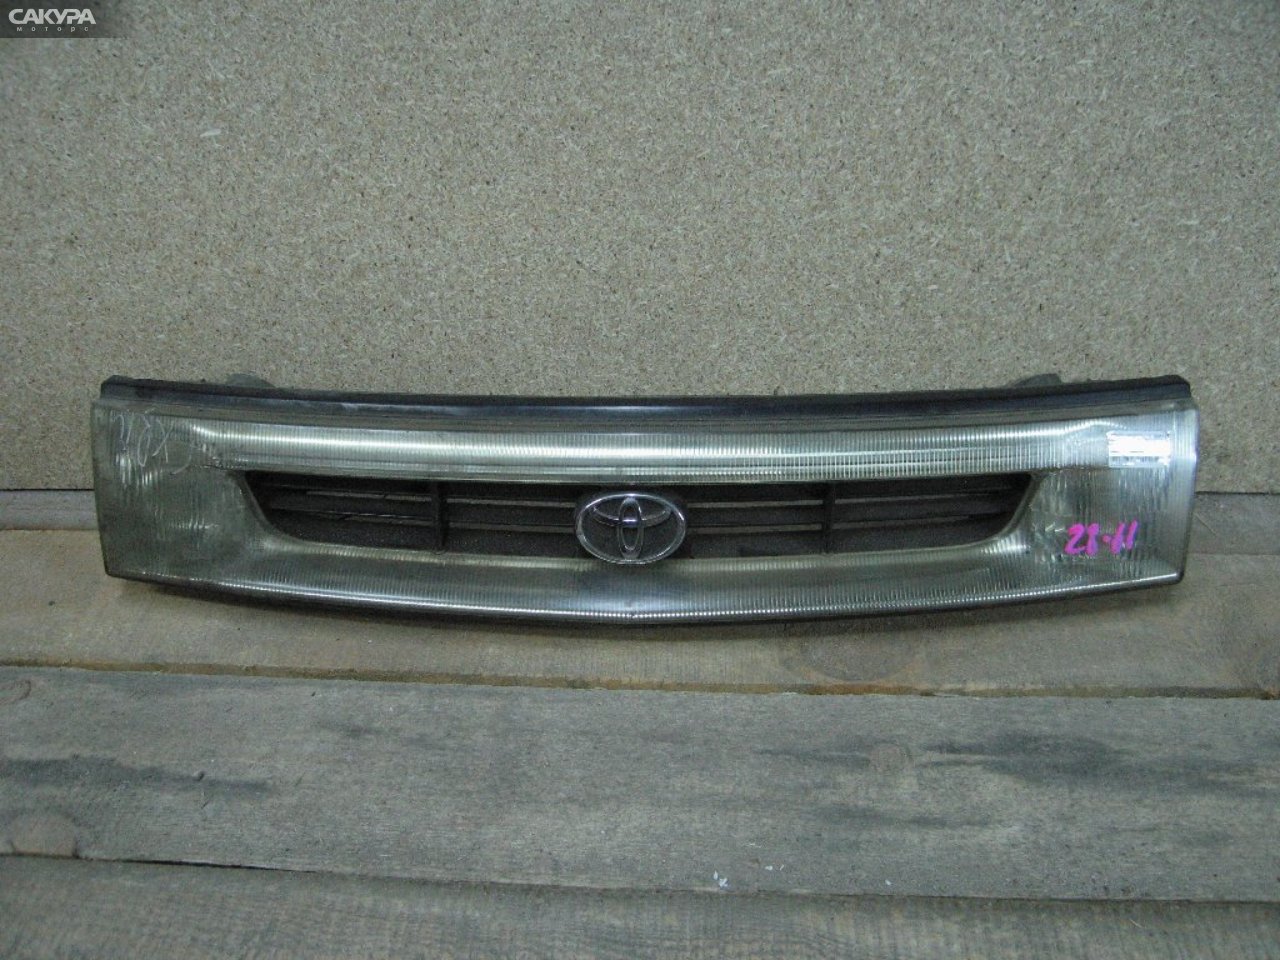 Решетка радиатора Toyota Estima Emina CXR10G: купить в Сакура Абакан.